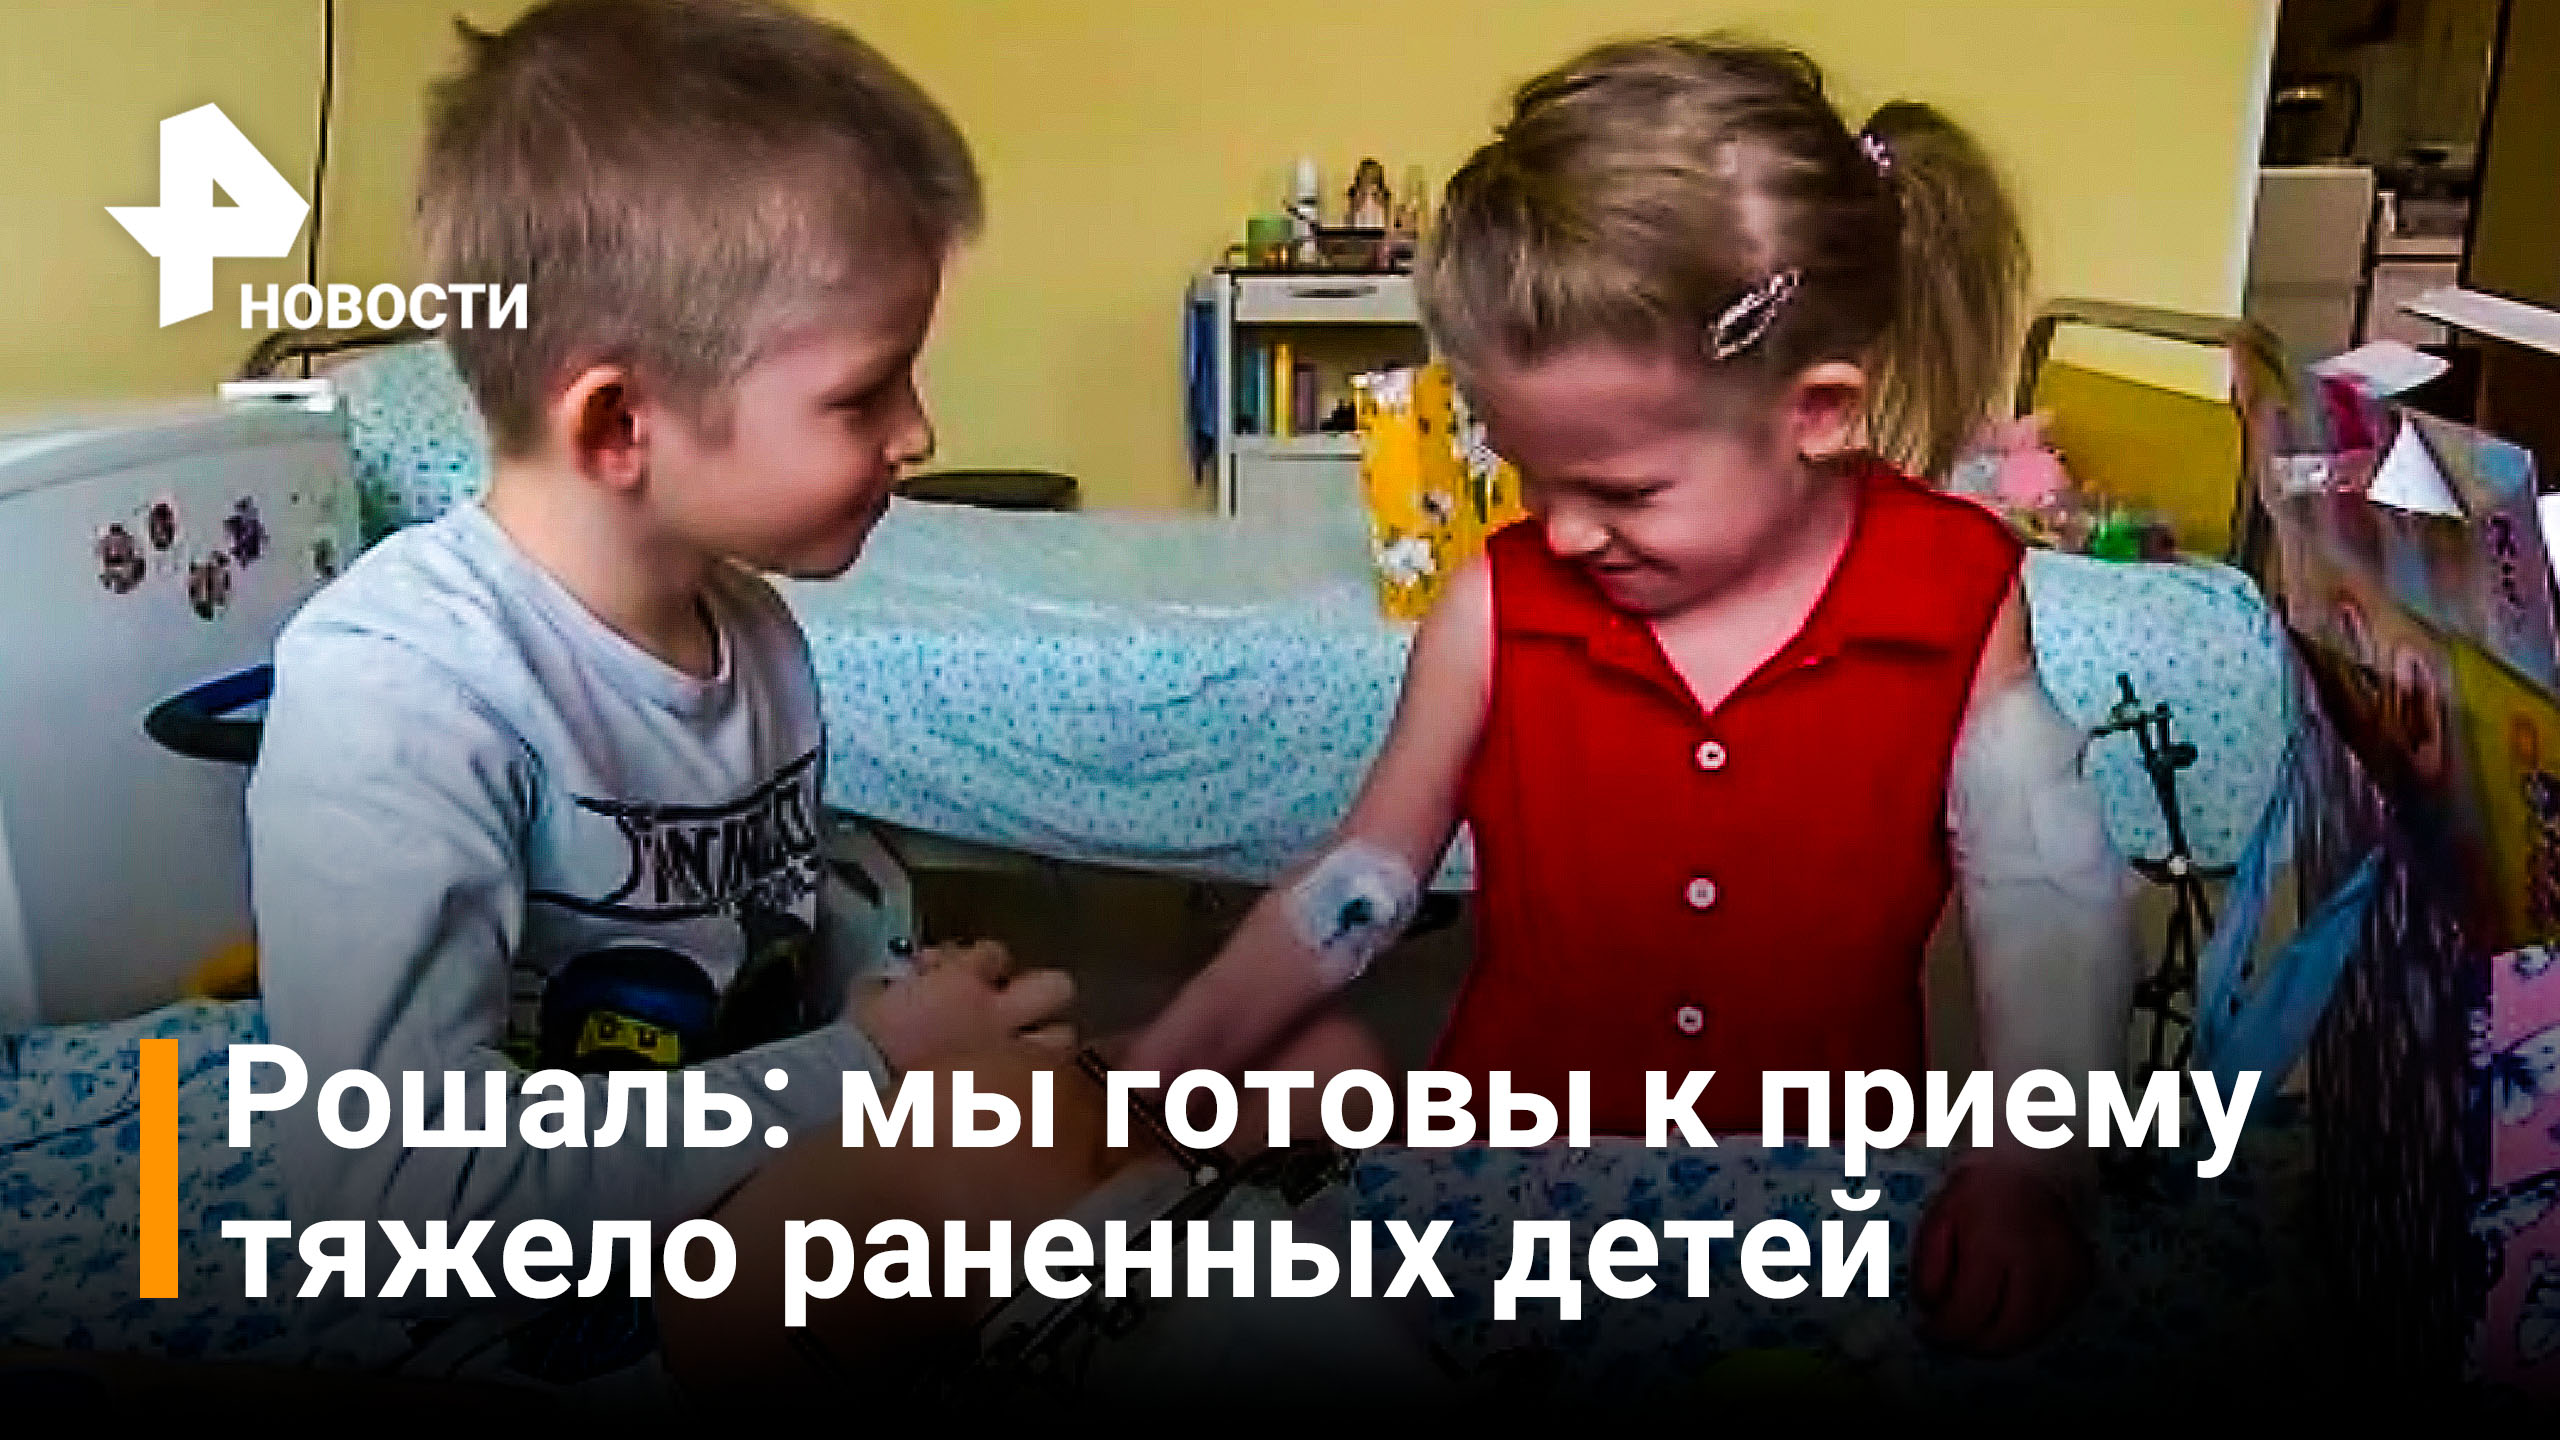 В неотложной детской хирургии рассказали о состоянии раненых в Донбассе детей / РЕН Новости